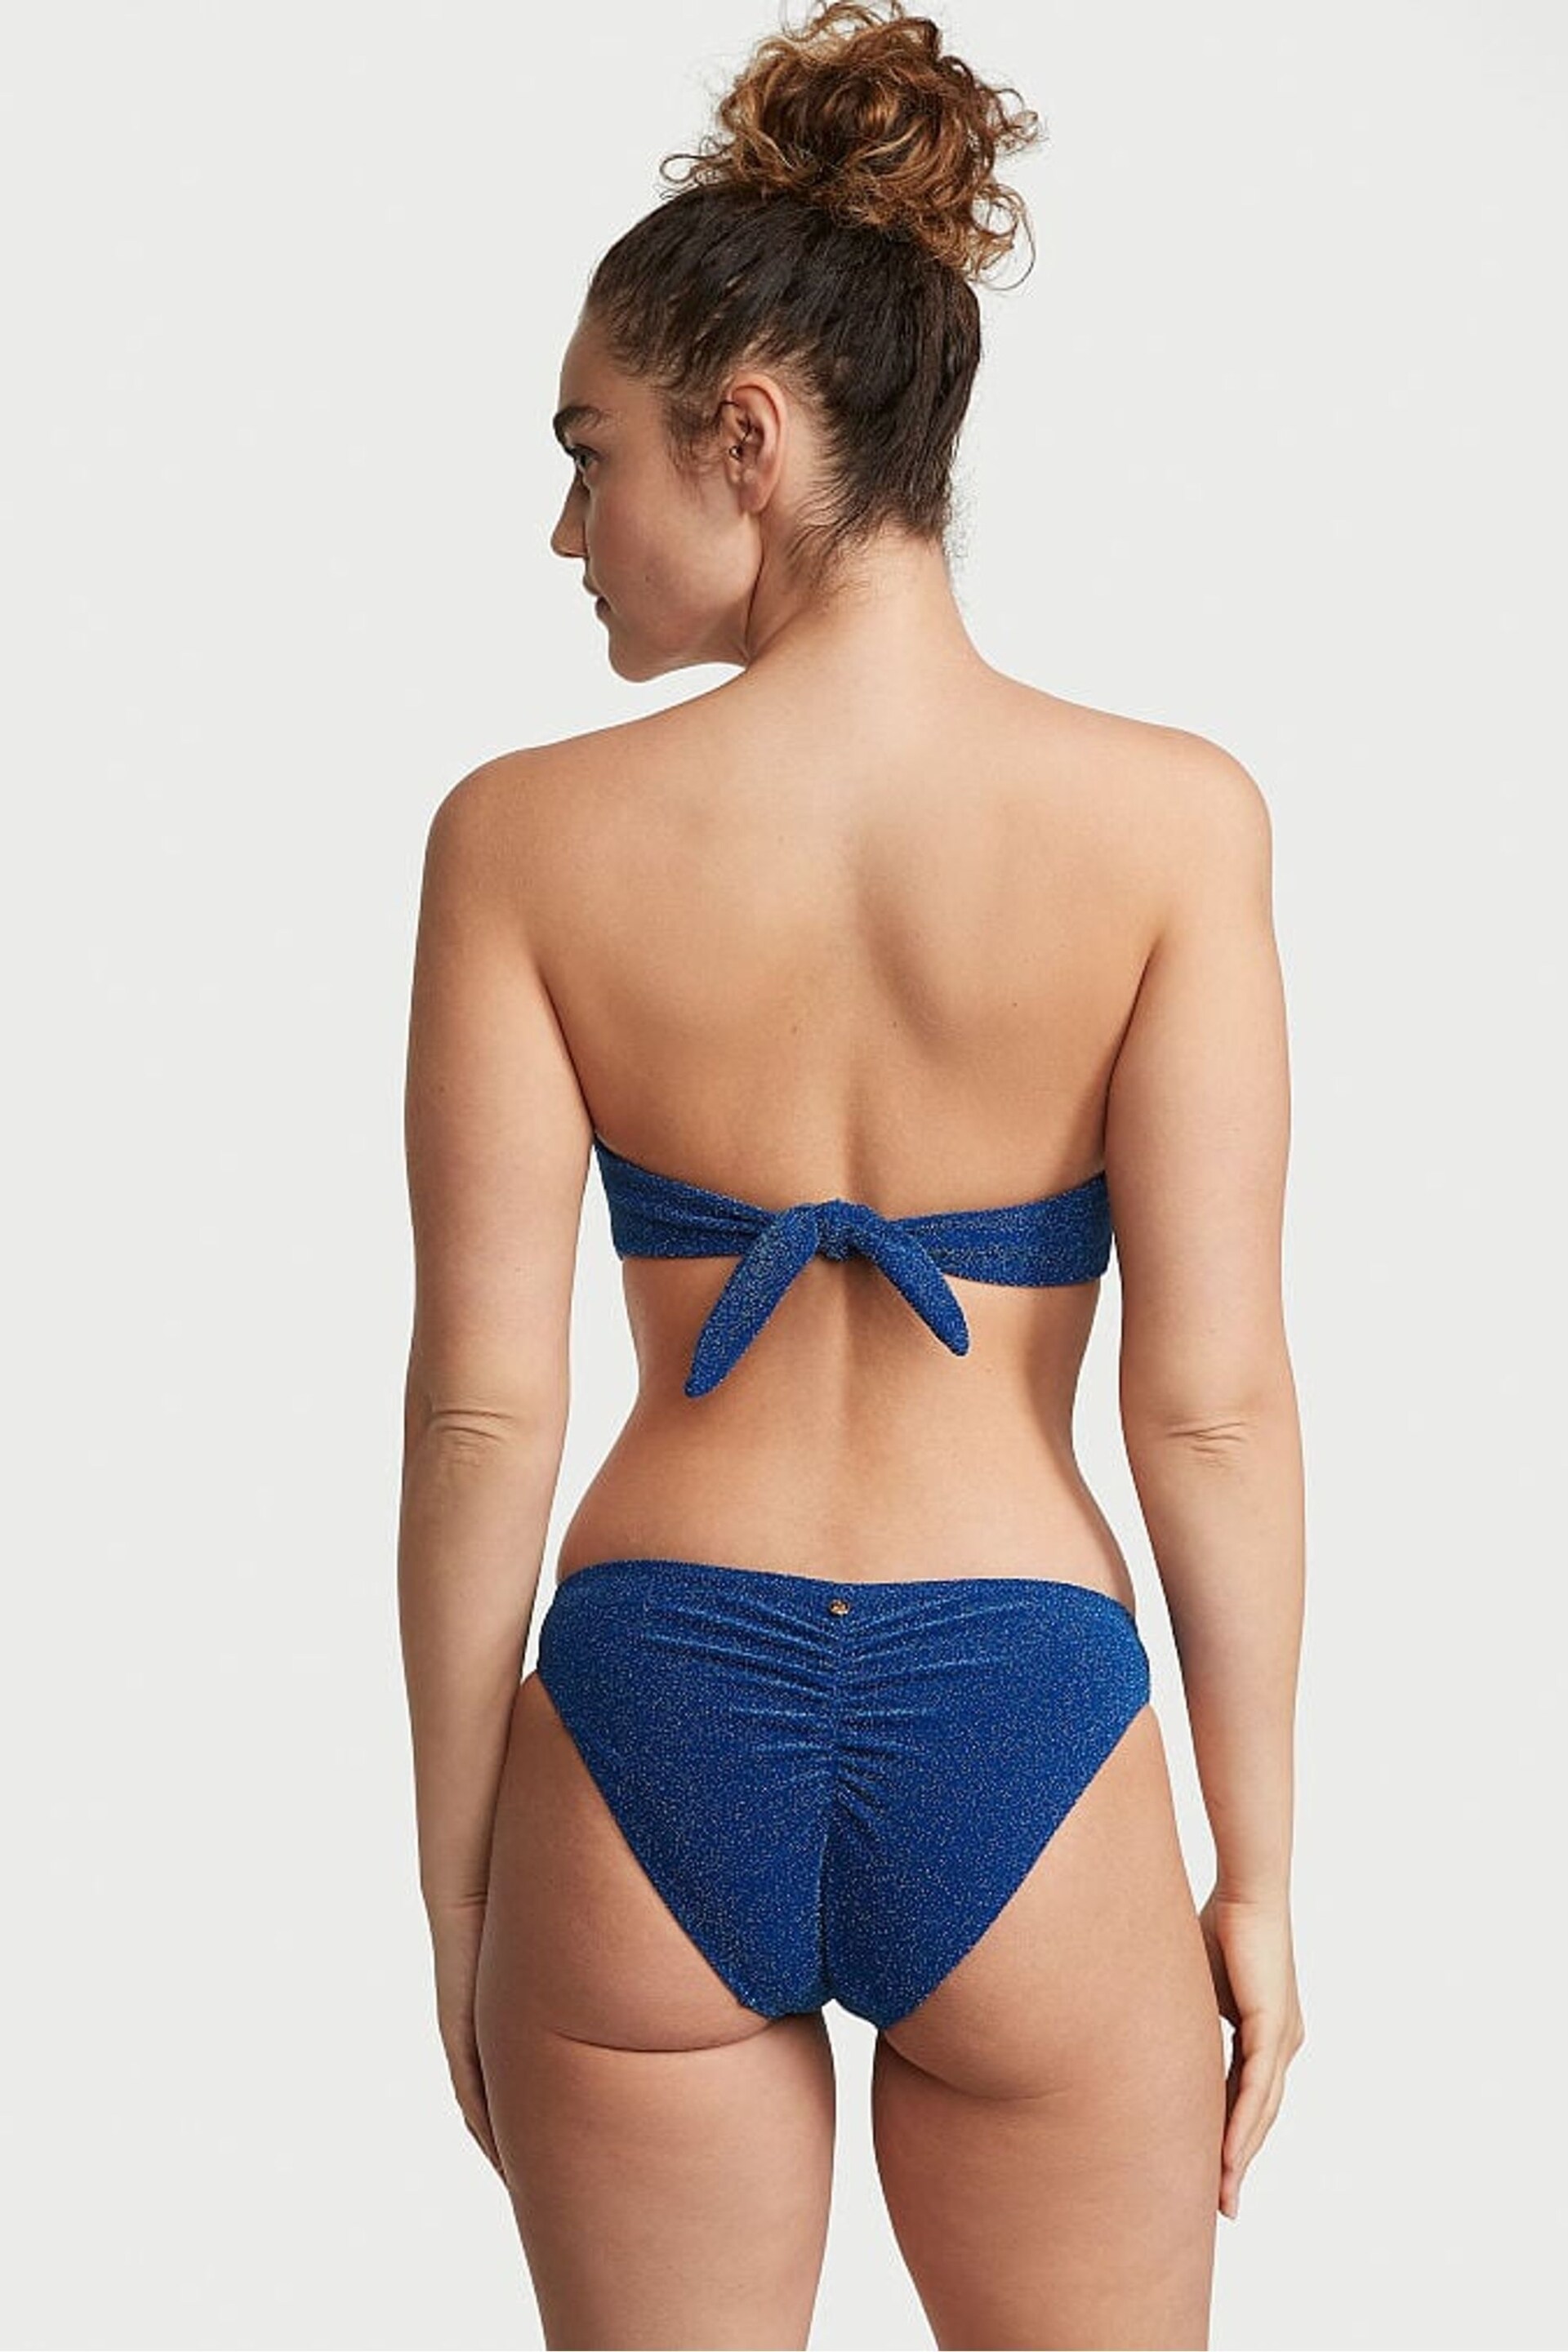 Victoria's Secret Diver Blue Cheeky Shimmer Swim Bikini Bottom - Image 2 of 3